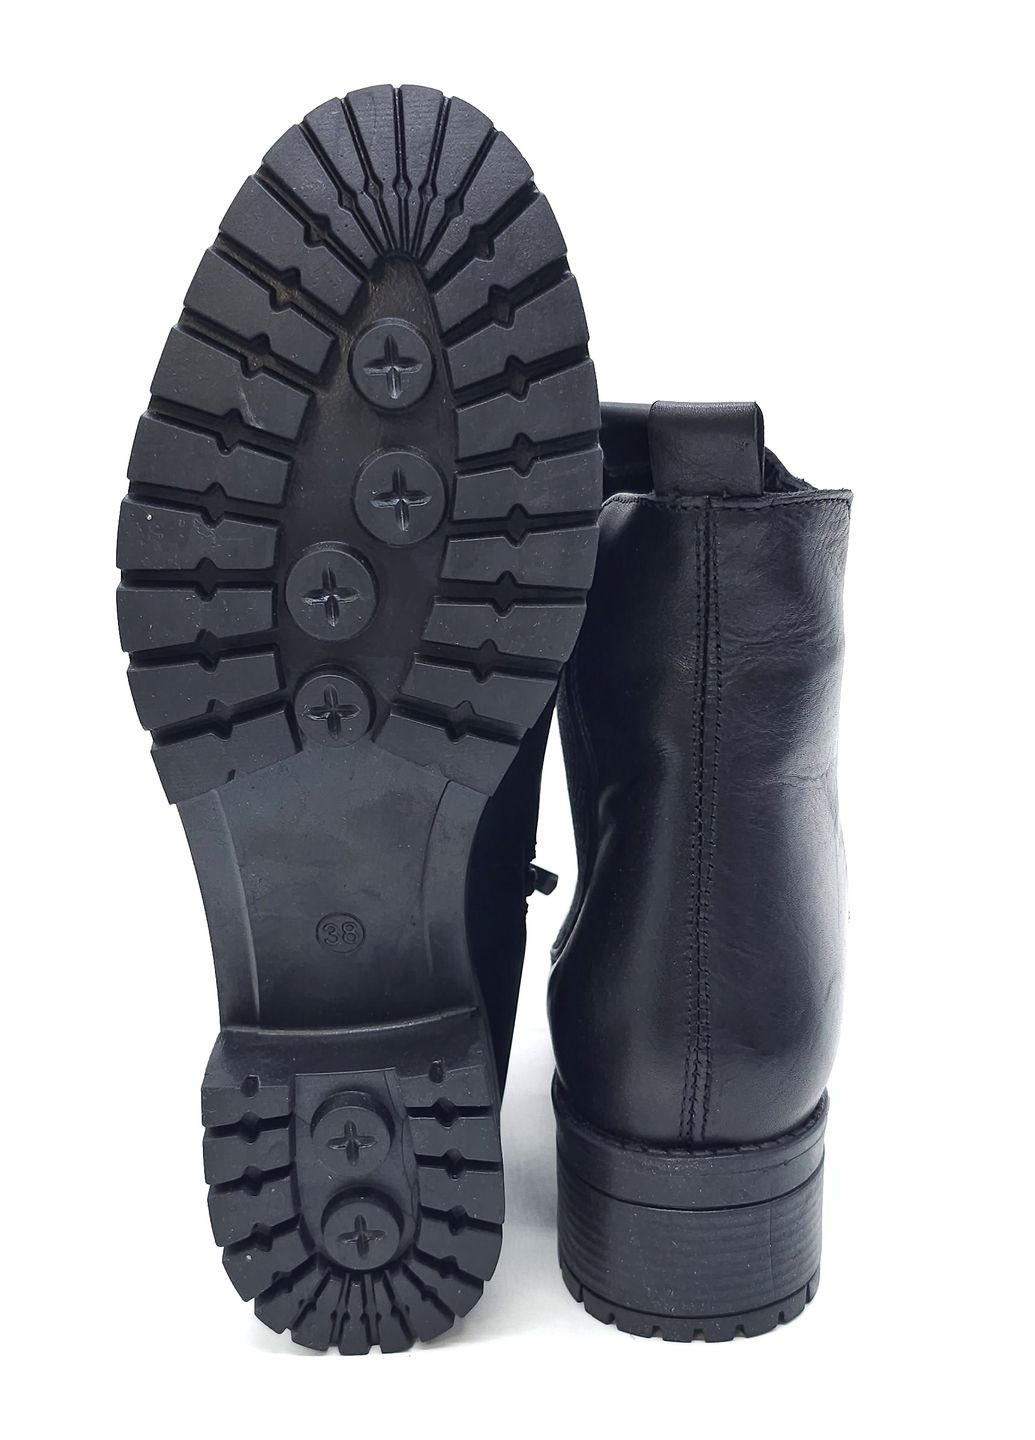 Осенние женские ботинки черные кожаные at-13-1 24 см (р) ALTURA